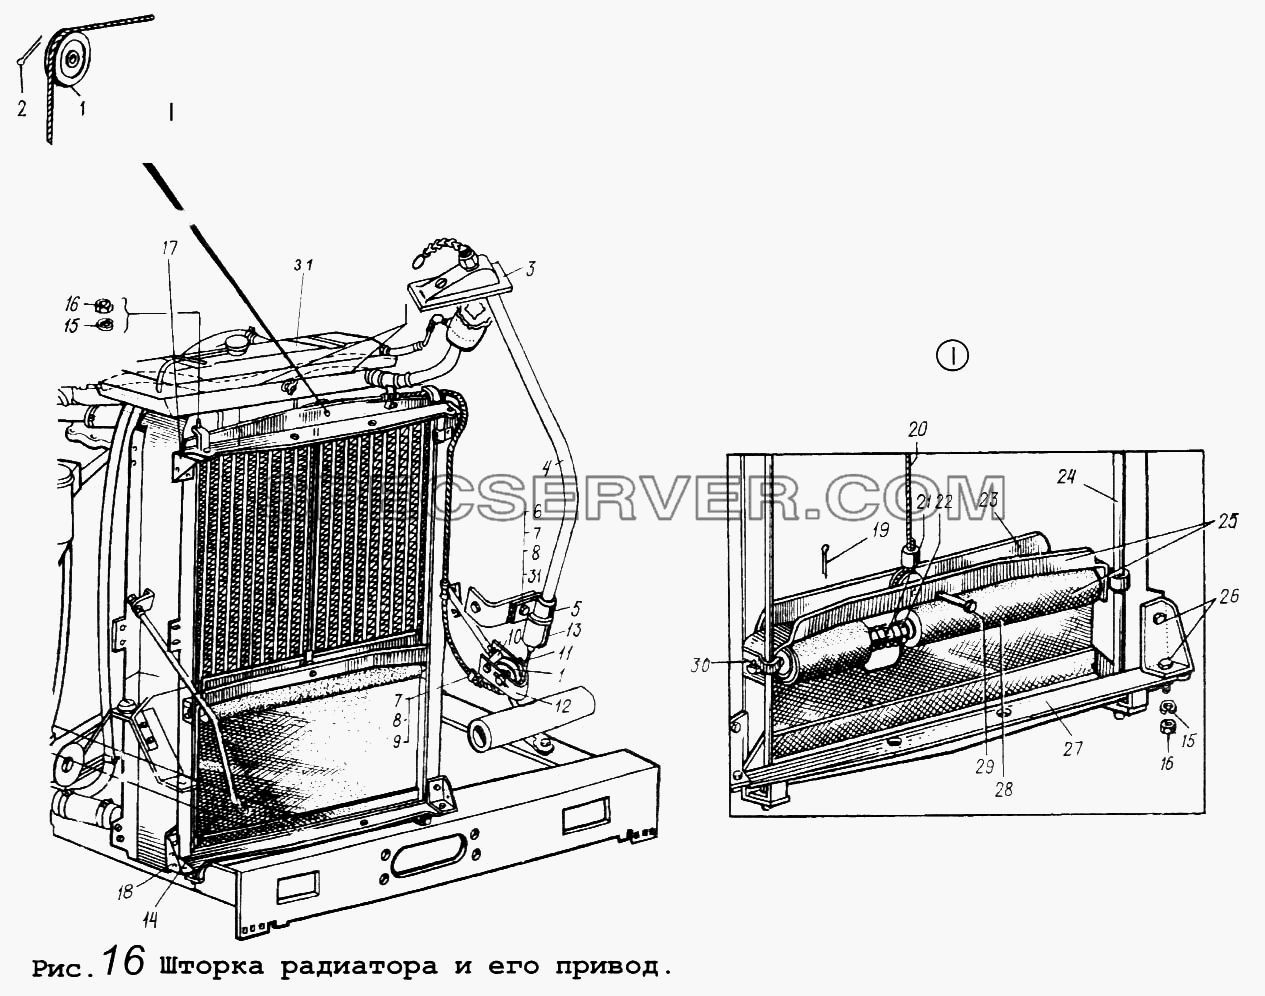 Шторка радиатора и его привод для МАЗ-5434 (список запасных частей)